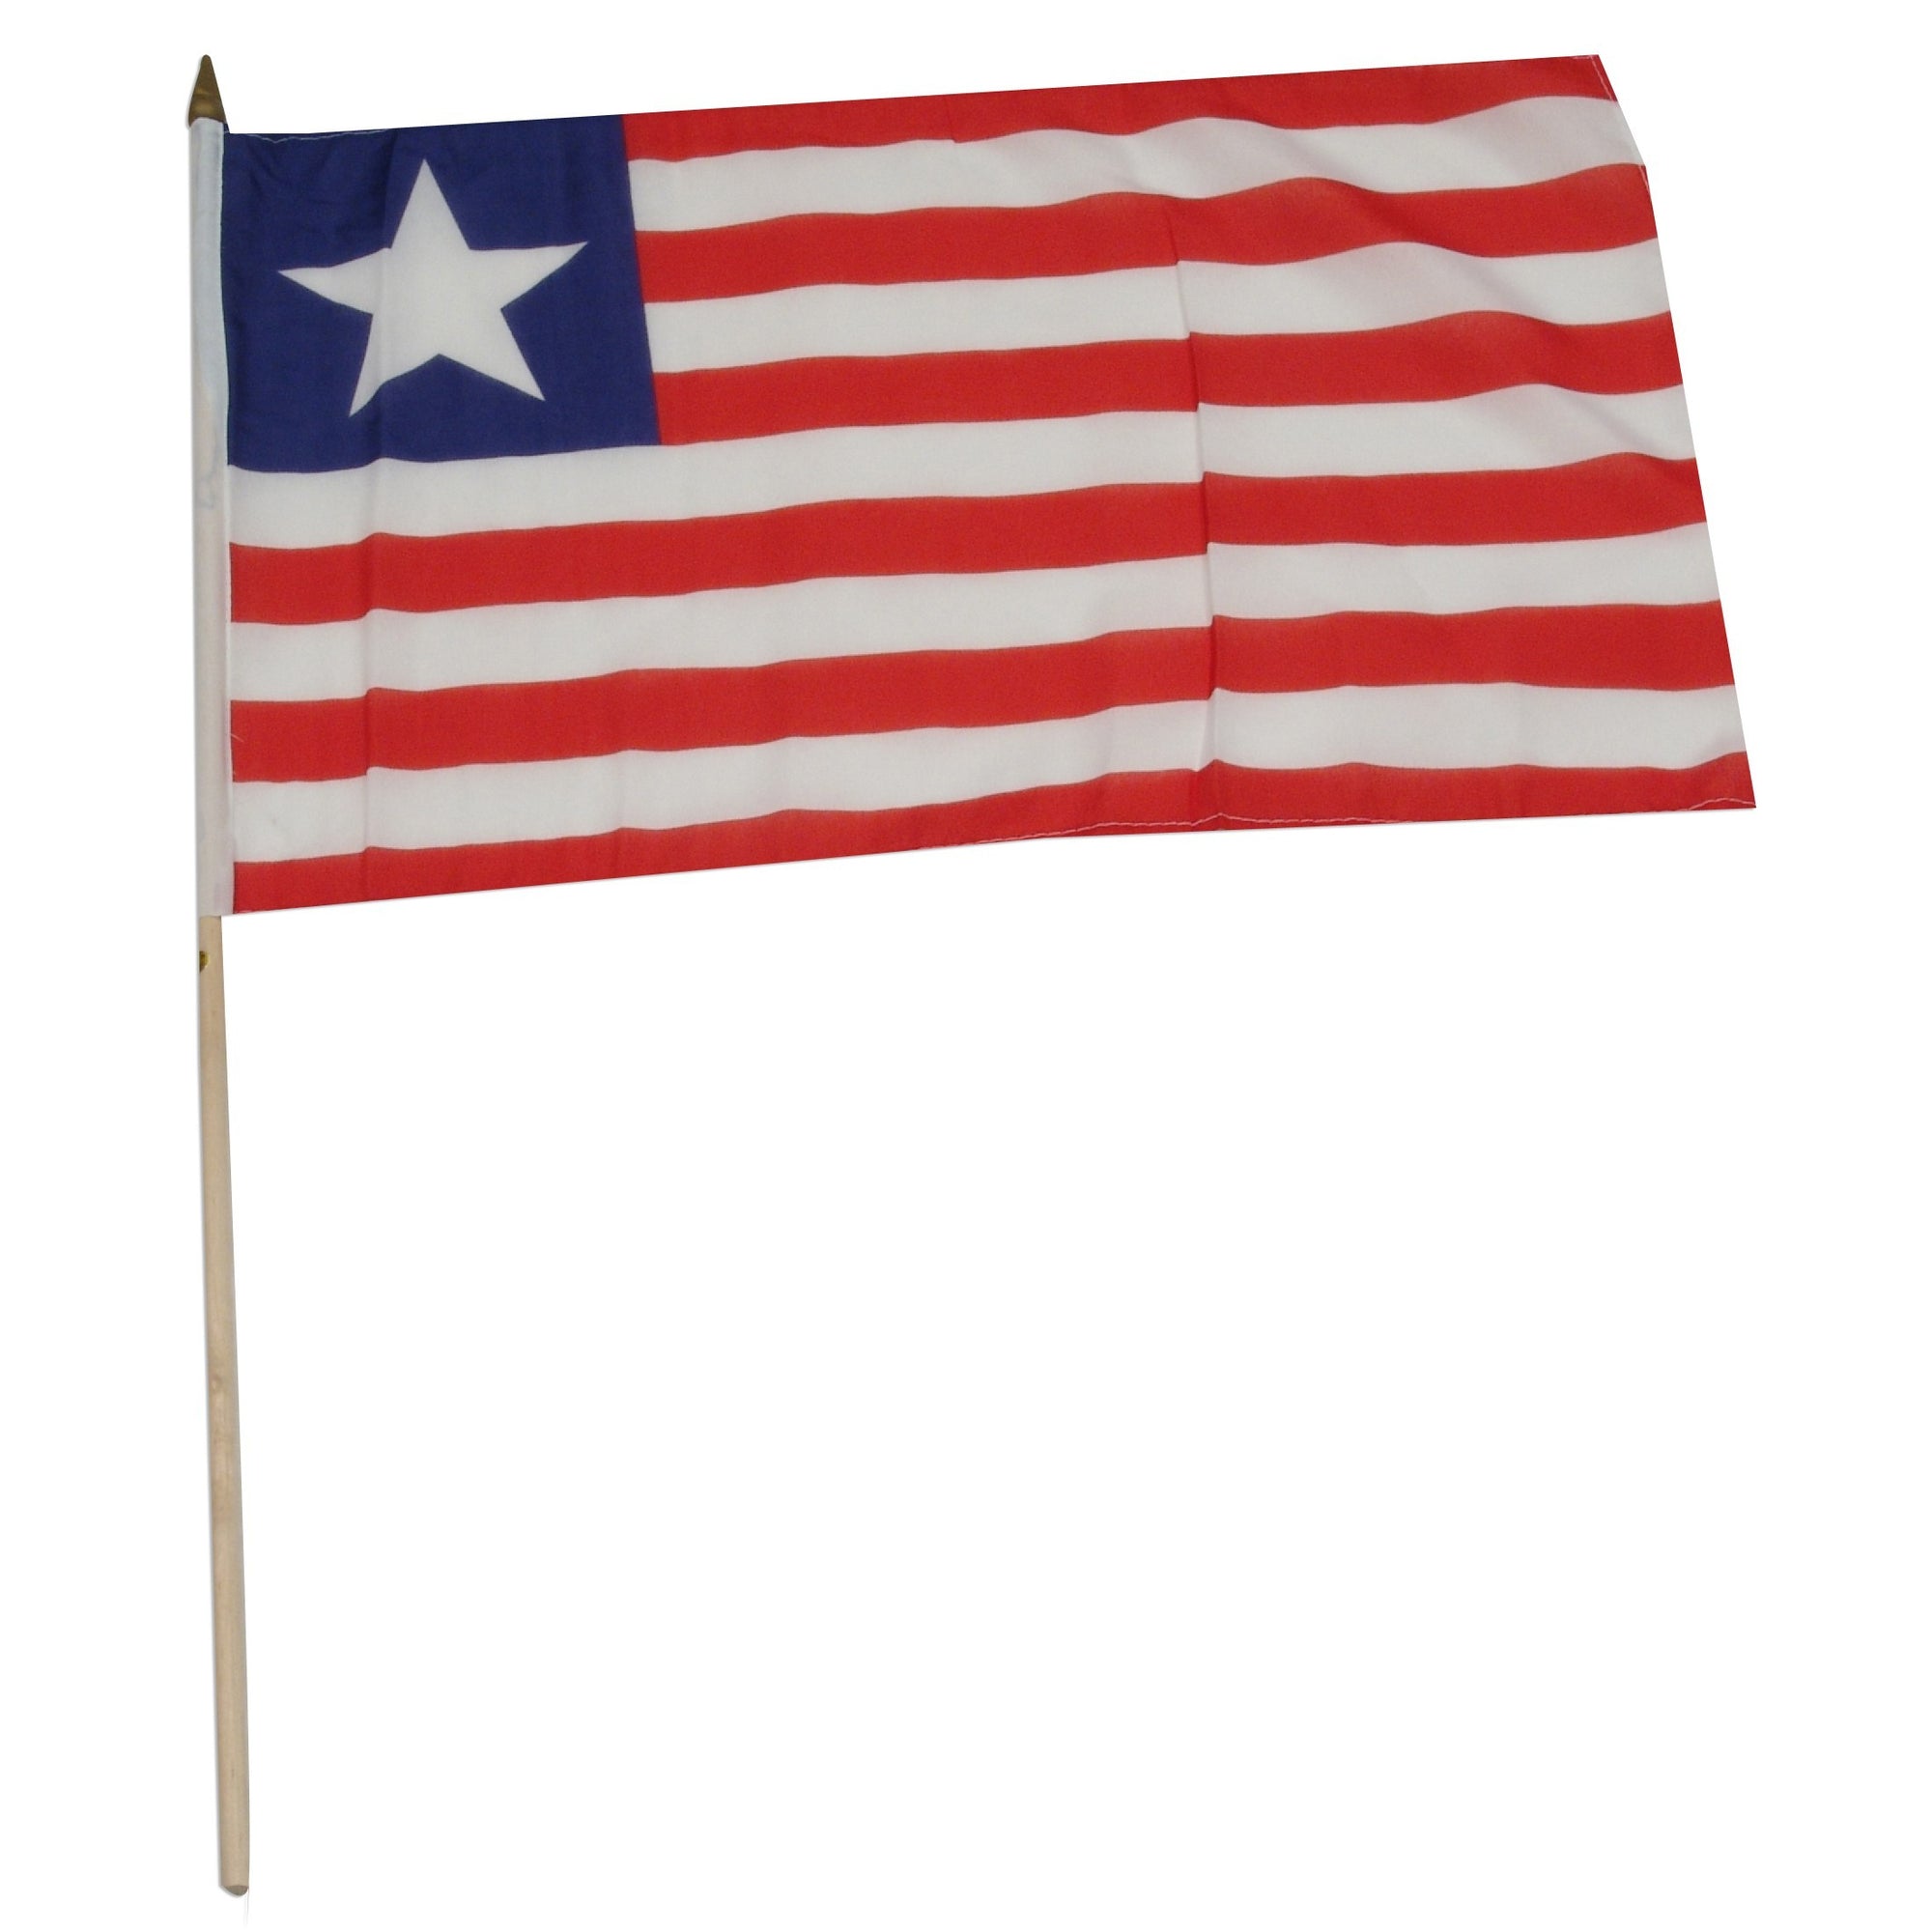 Liberia 12" x 18" Mounted Flag